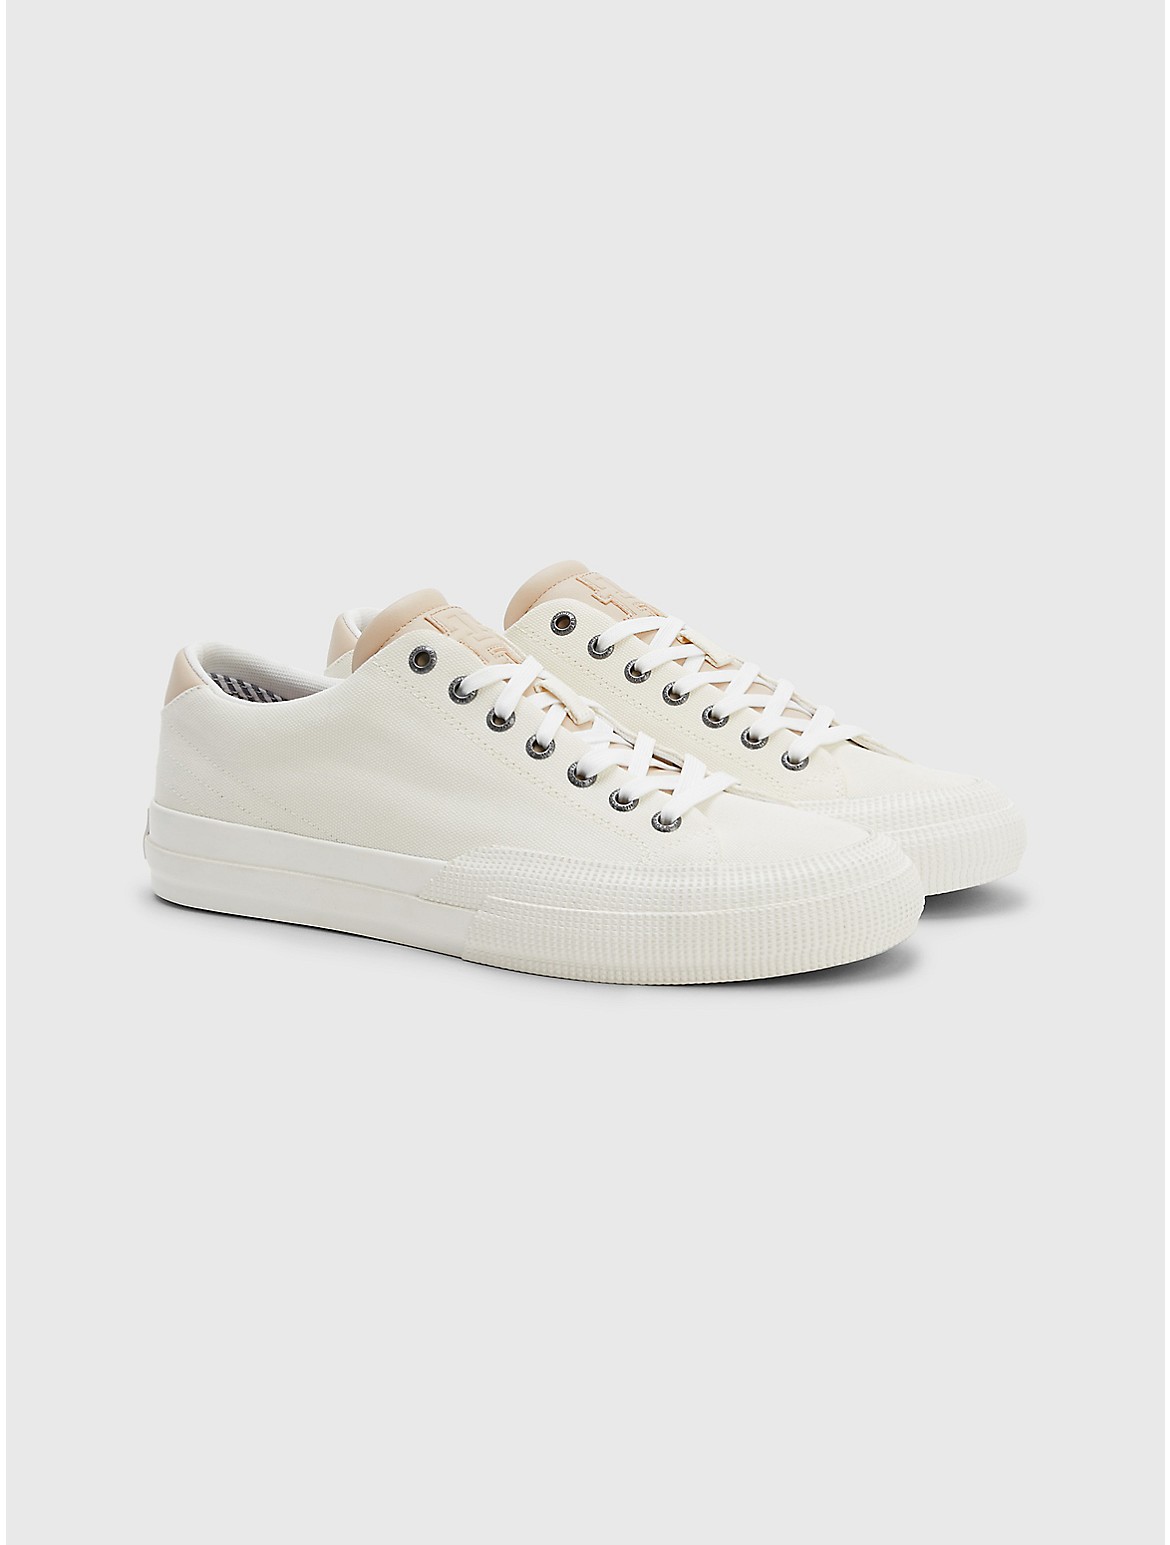 Tommy Hilfiger Men's Abaca Low-Cut Sneaker - White - 10